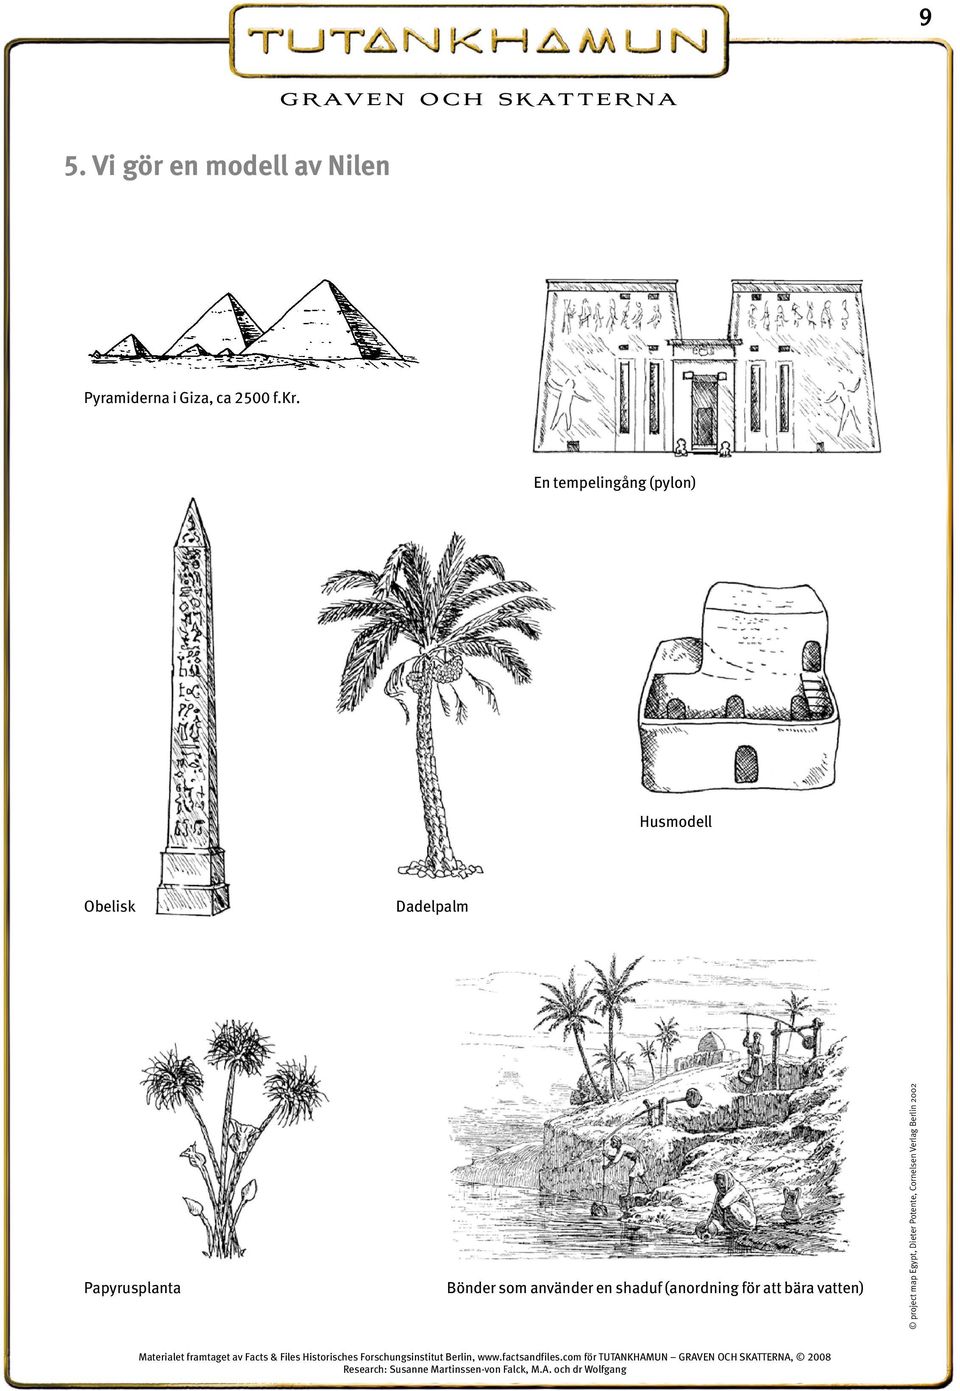 shaduf (anordning för att bära vatten) project map Egypt, Dieter Potente, Cornelsen Verlag